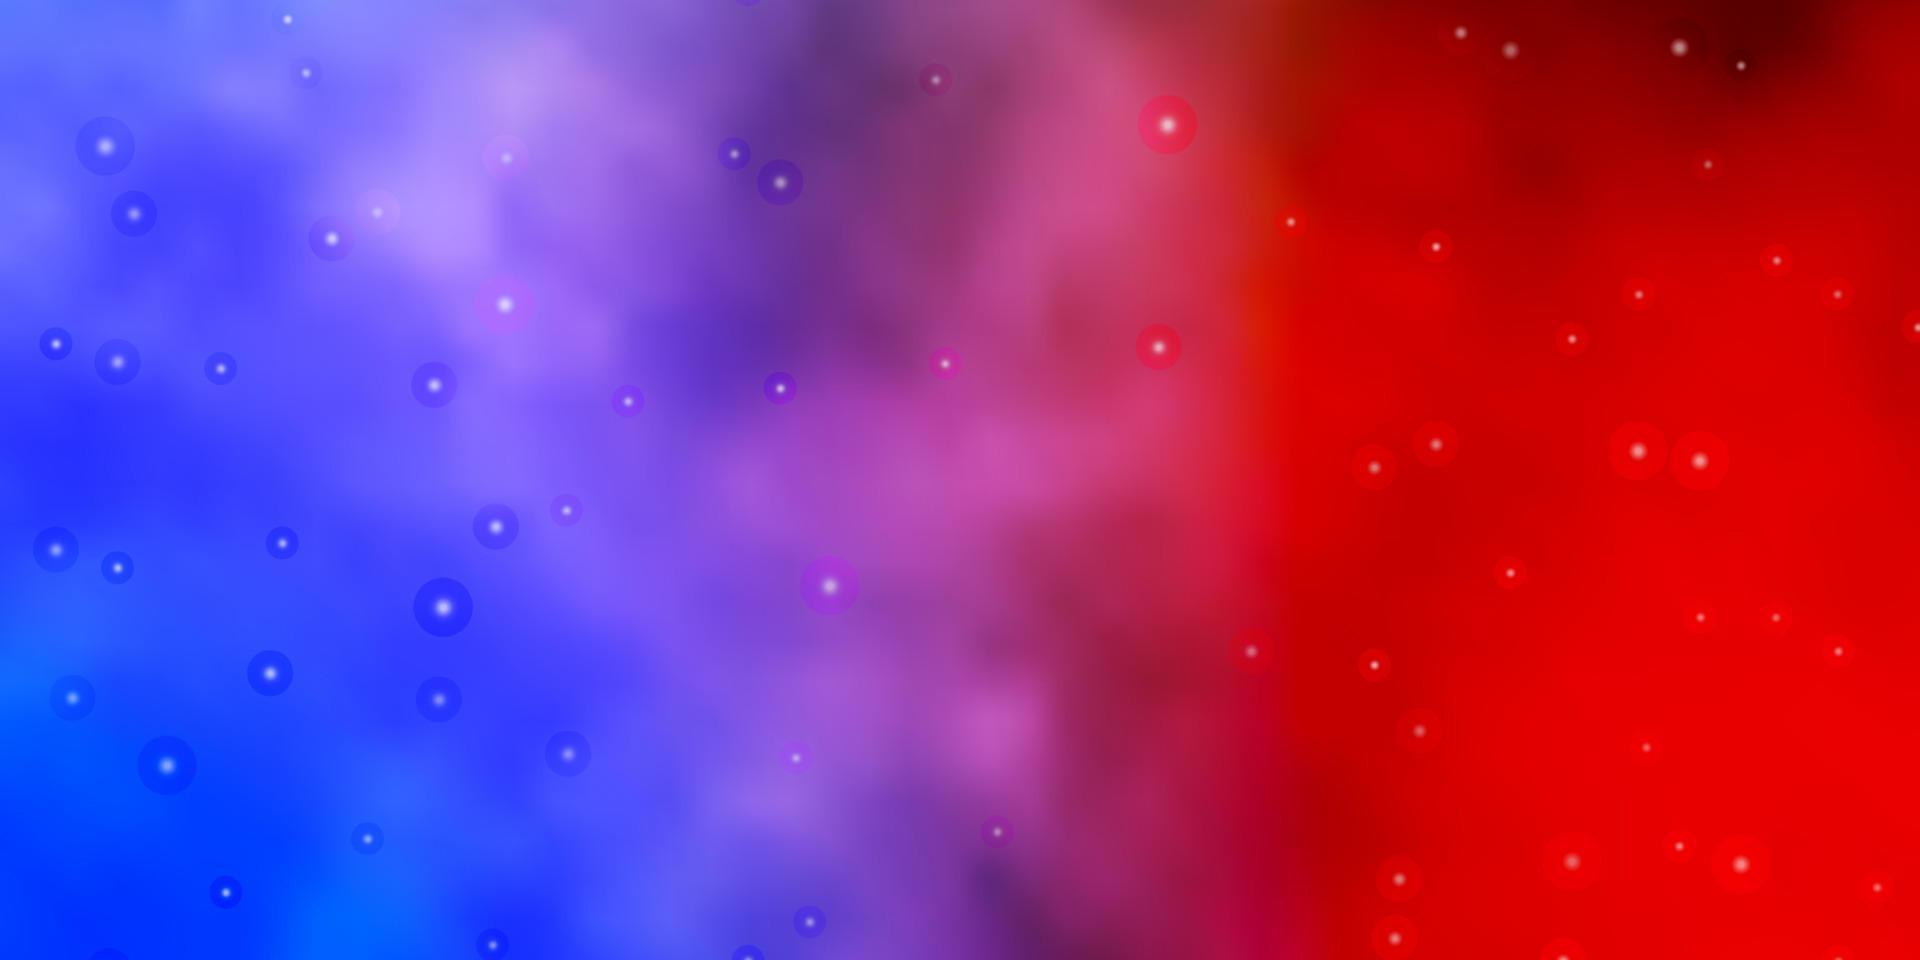 Fondo de vector azul claro, rojo con estrellas pequeñas y grandes.